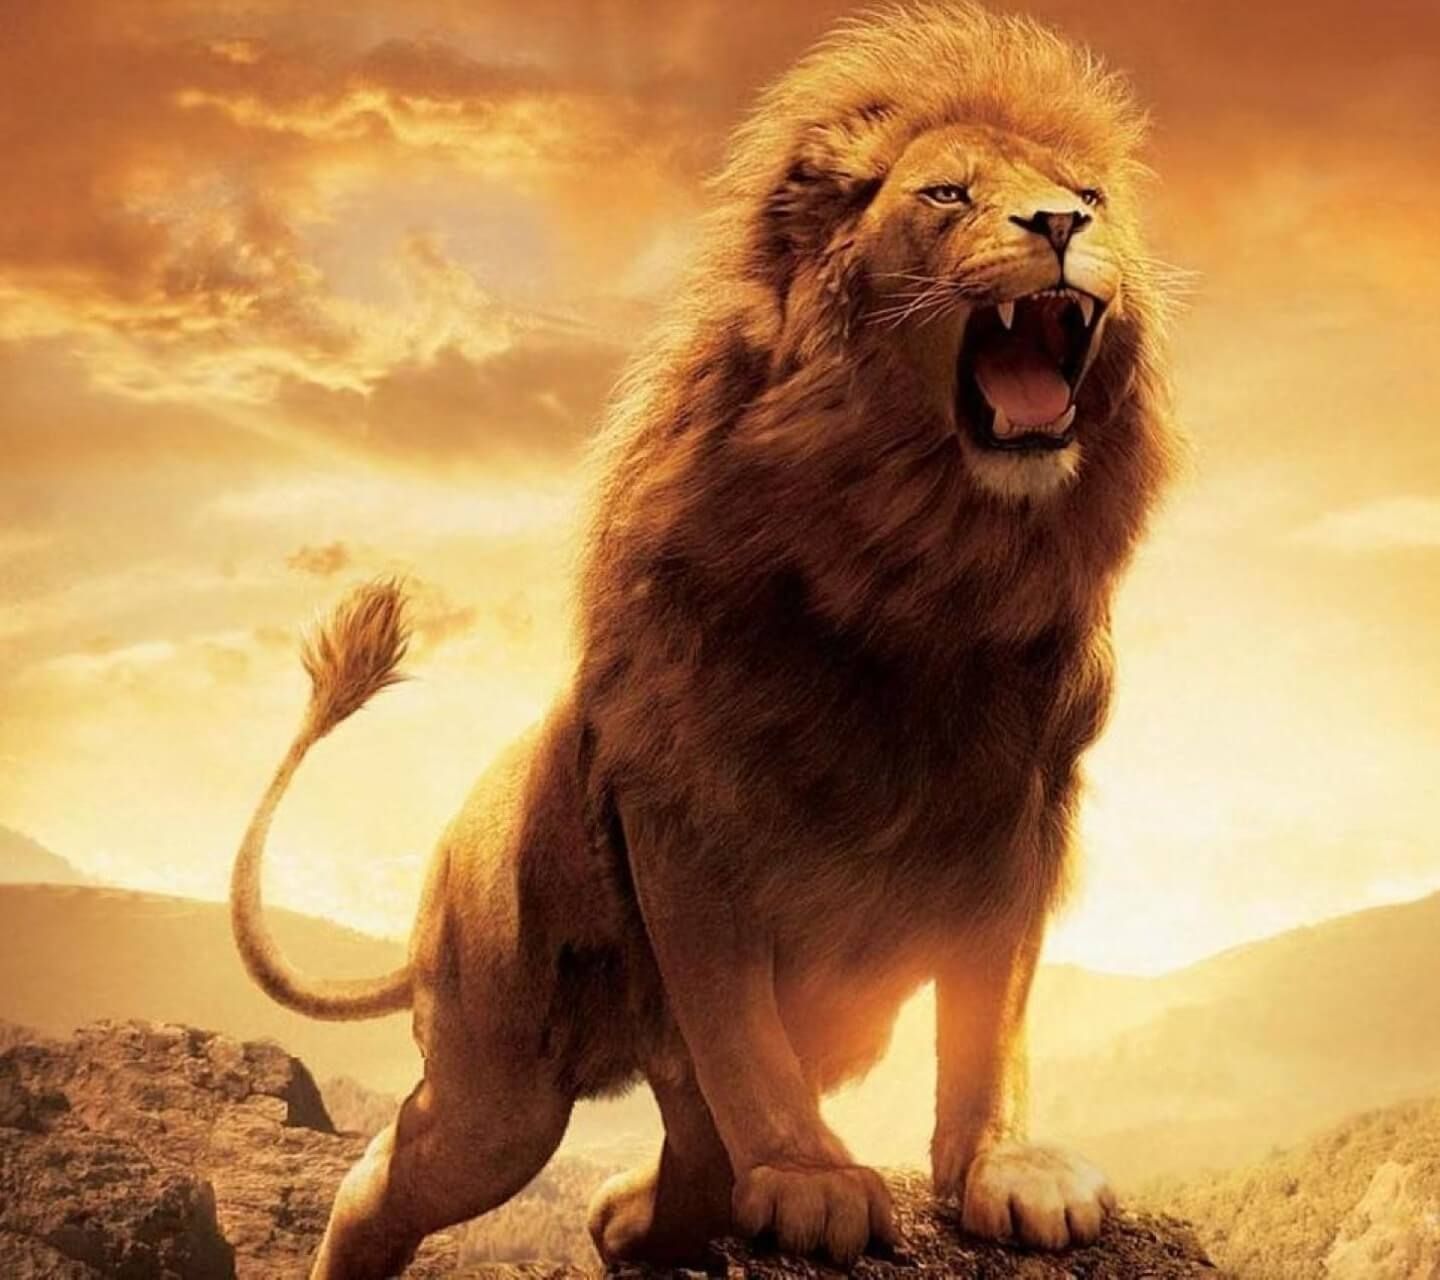 download dangerous lion images
